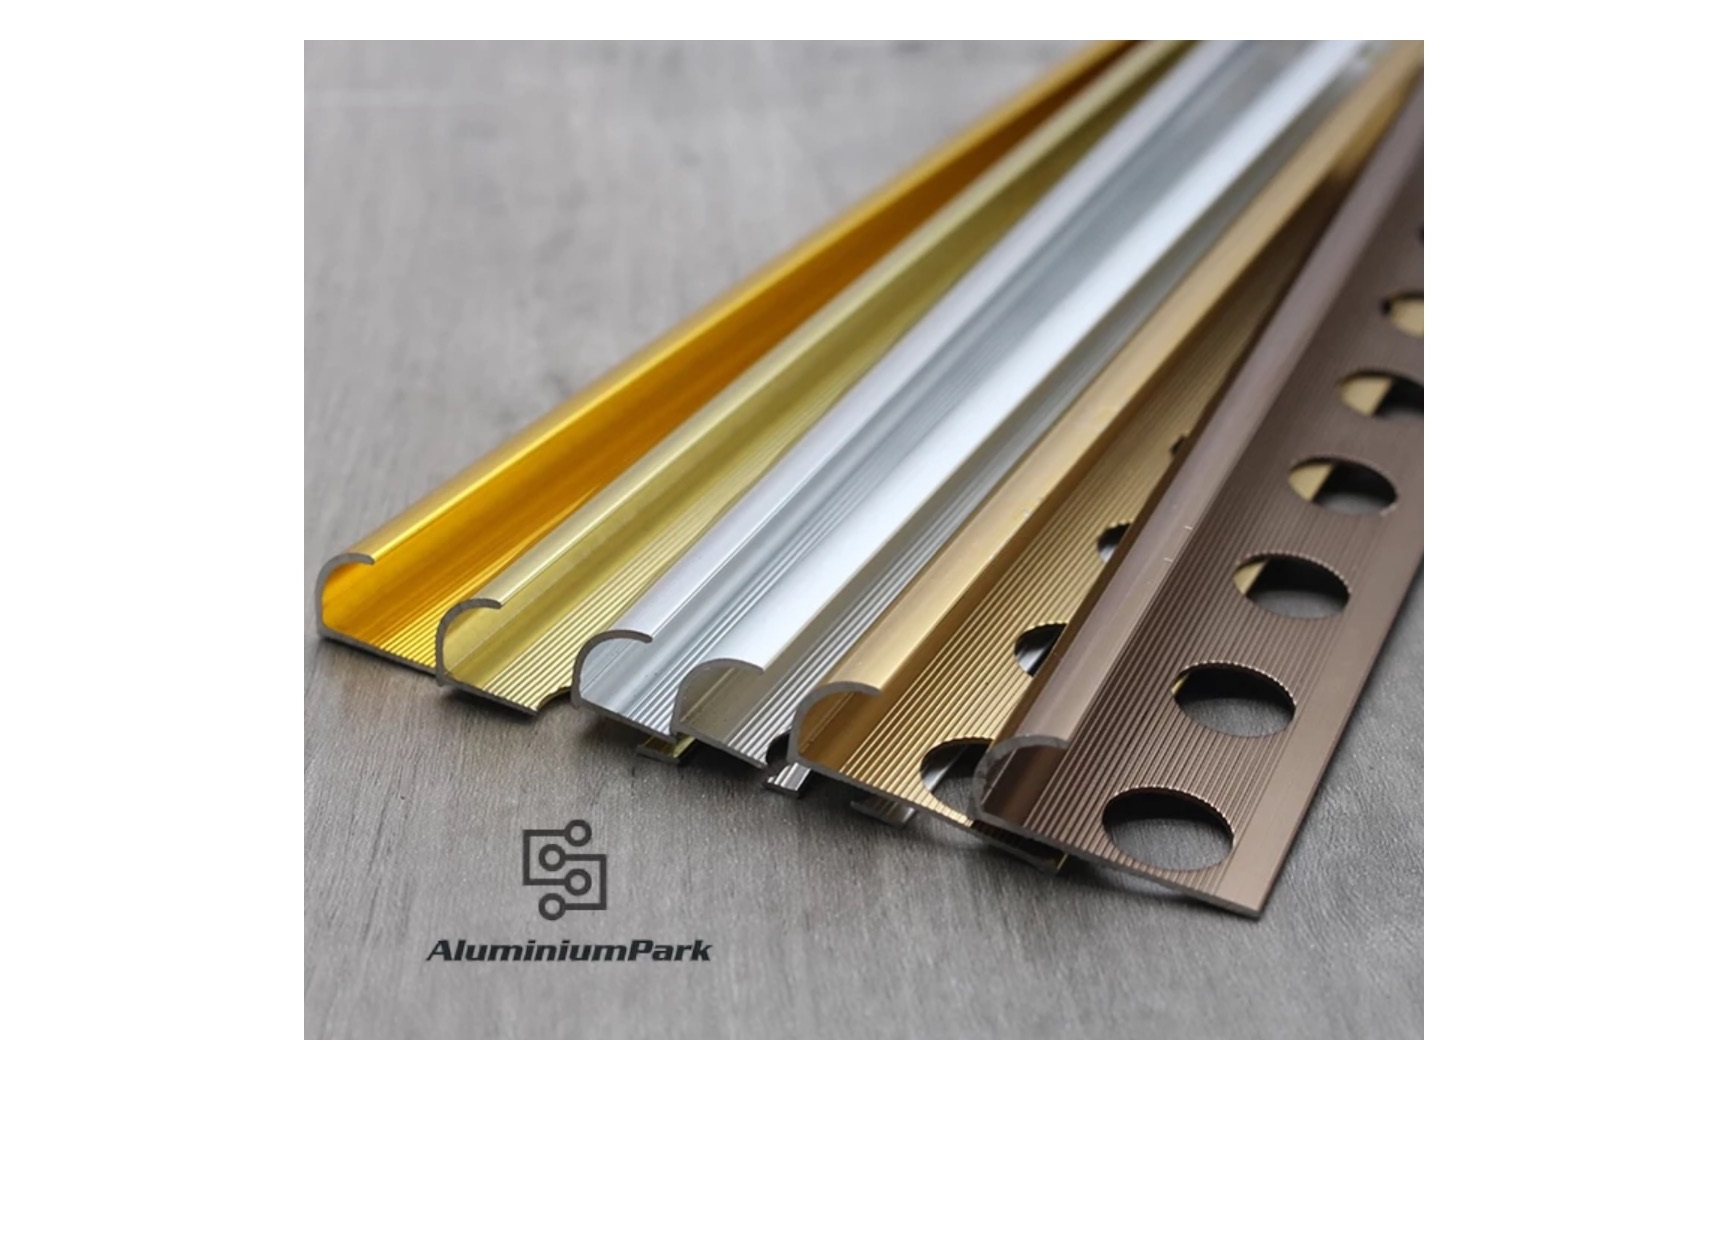 Aluminiumpark Aluminium Tile Trims Tile Edge Trim for measurements 1728 X 1256